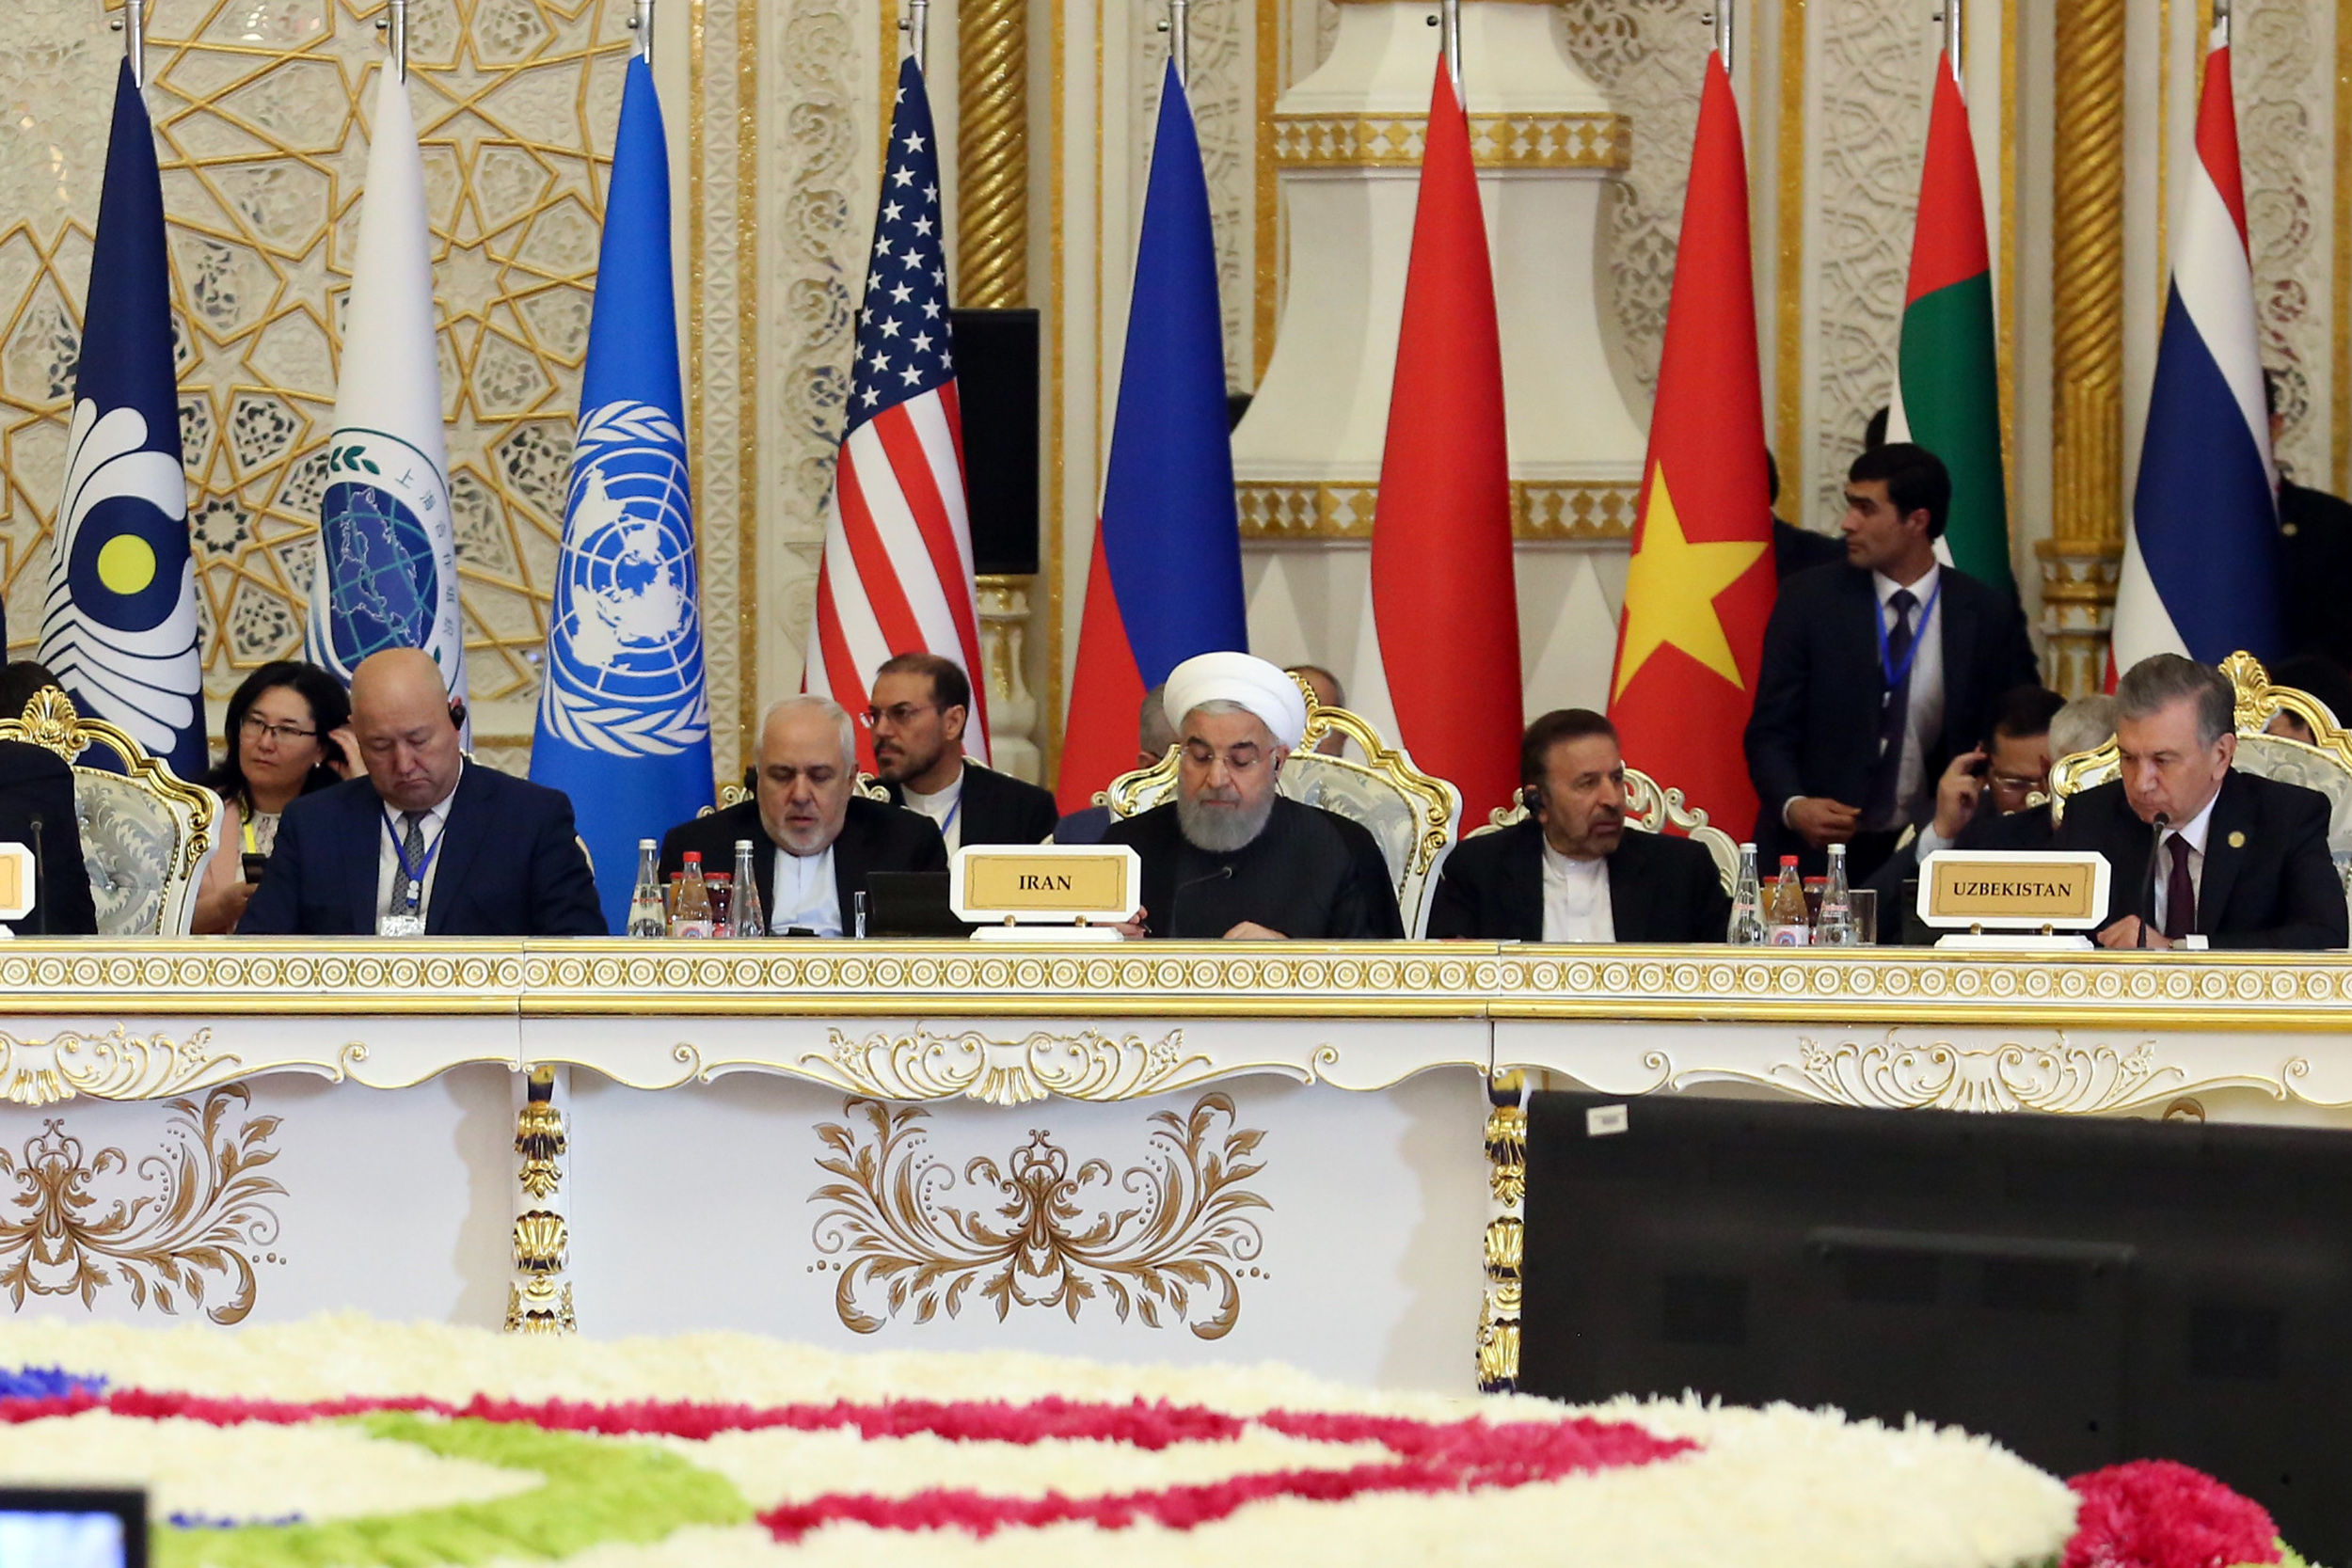 حسن روحانی در کنفرانس سیکا: سیاست خارجی ایران مبتنی بر همکاری و سیاست برد–برد است